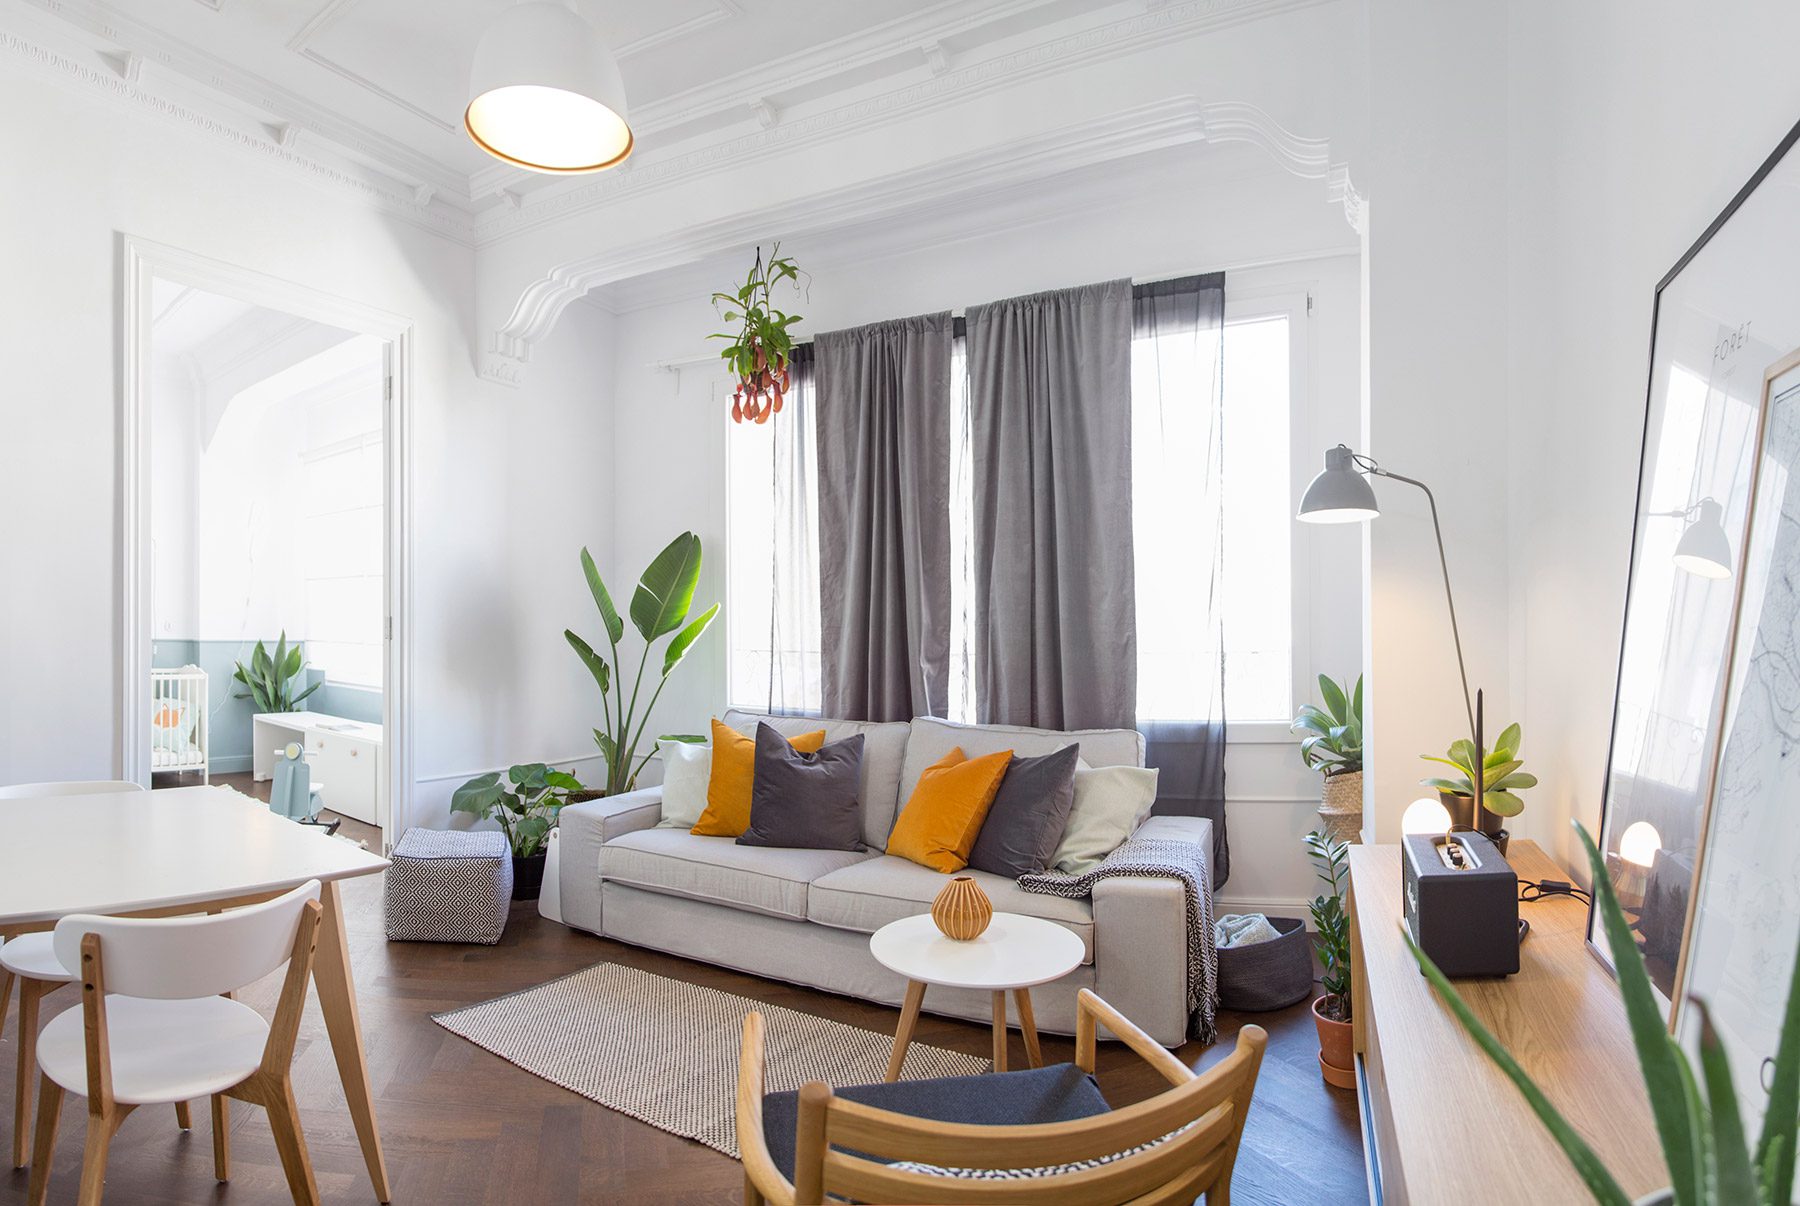 Homelabdesign Studio realiza la reforma de una vivienda en el primer ensanche de Valencia respetando su identidad